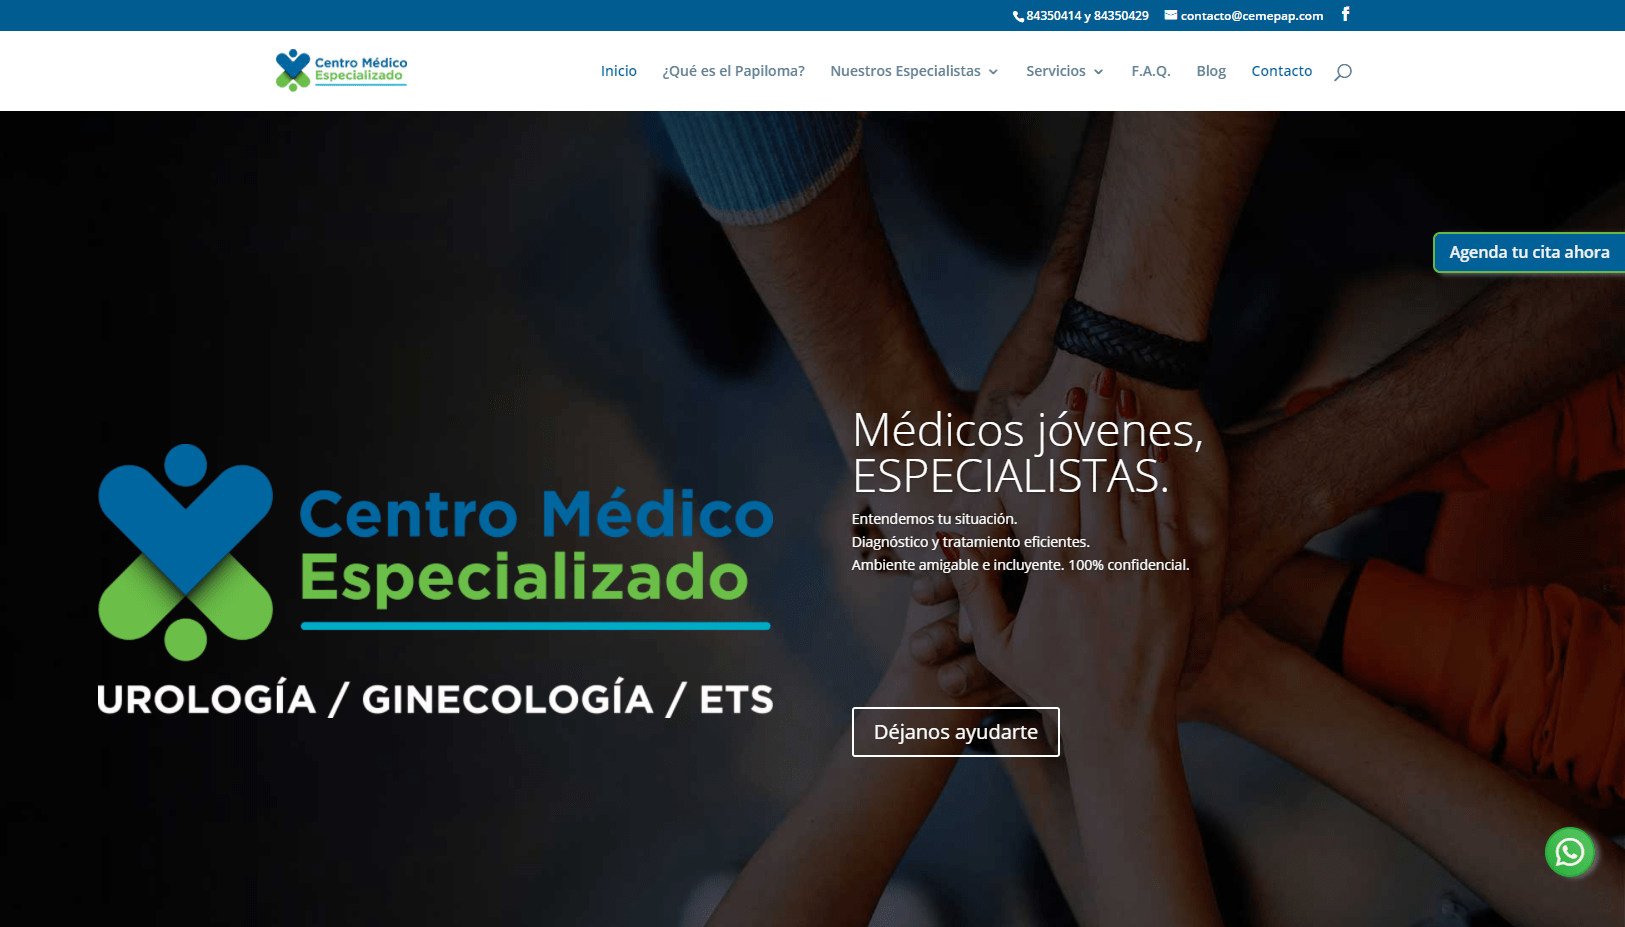 Centro Medico Especializado